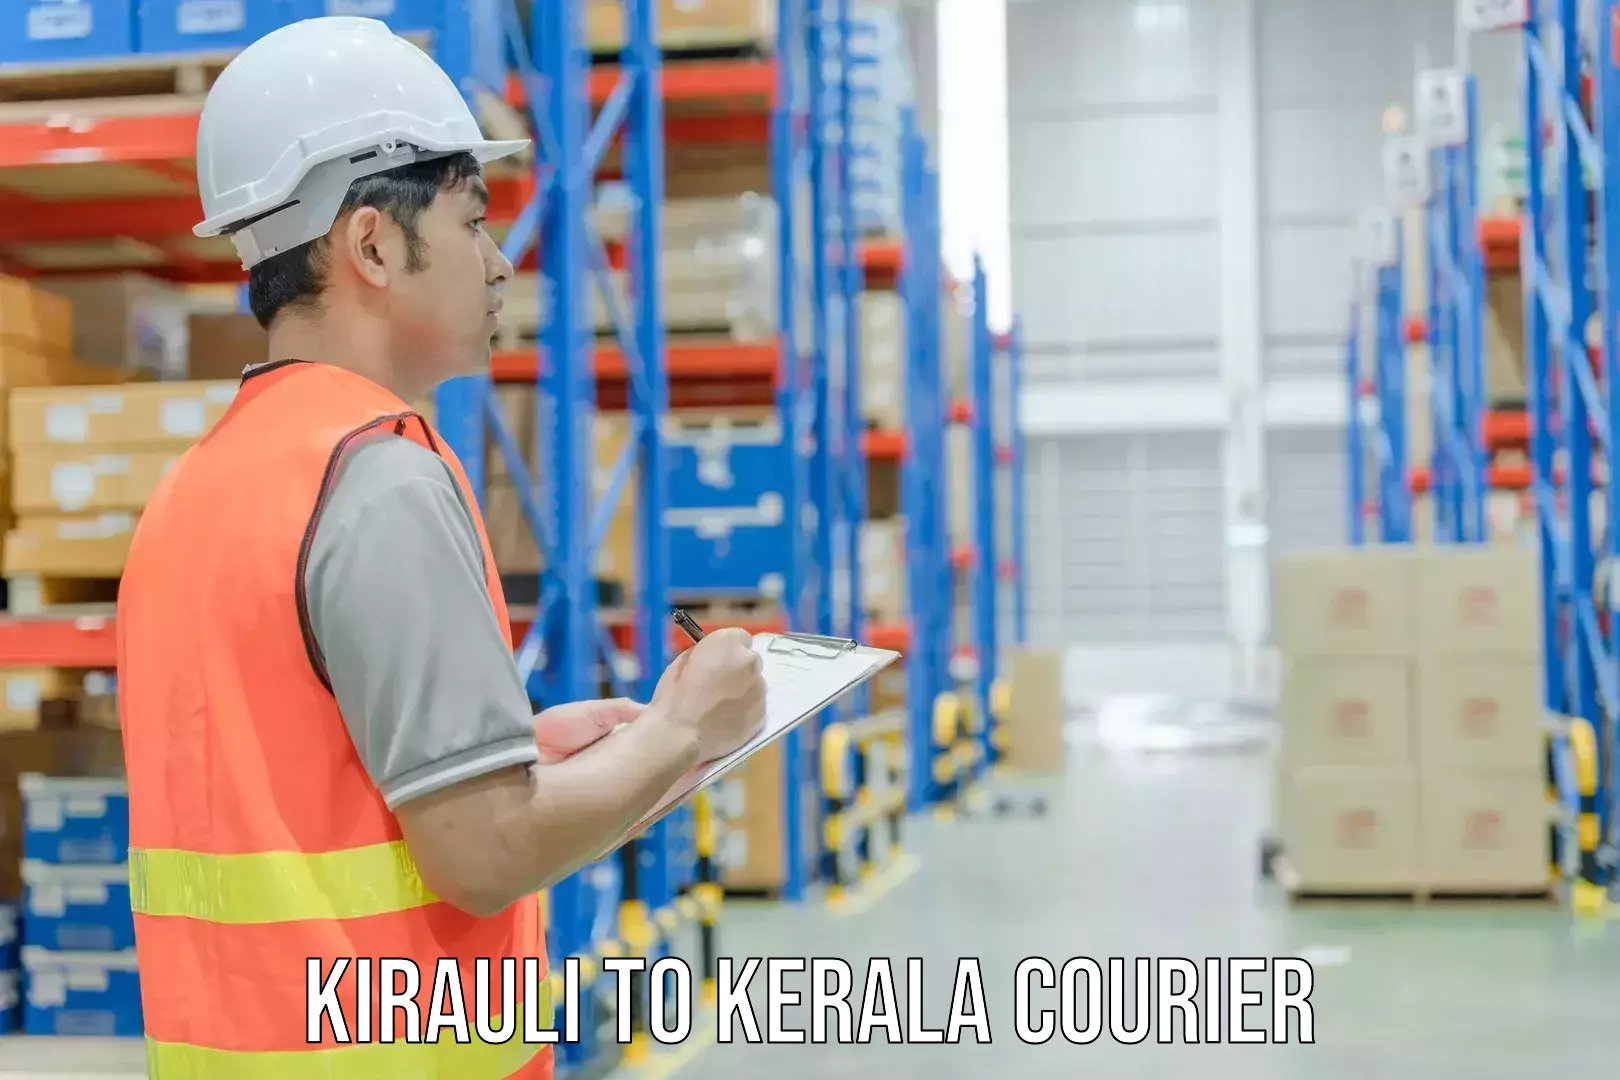 Express courier facilities Kirauli to Adur Kla